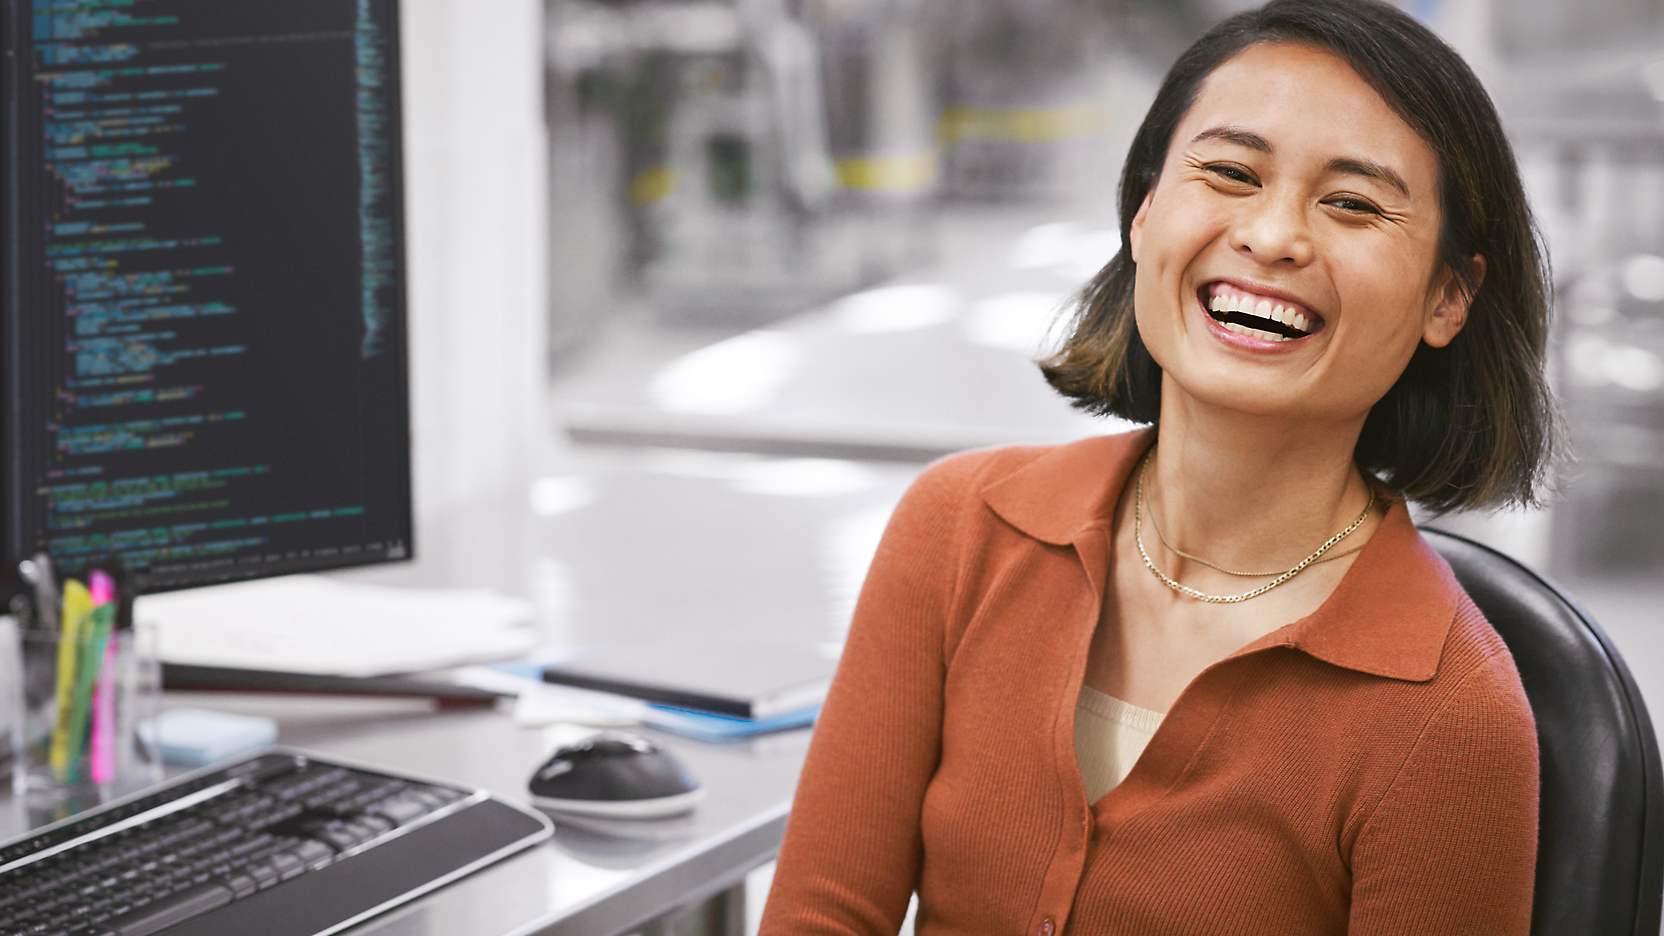 Een vrolijke vrouw die in een moderne kantooromgeving aan een bureau met een computer zit, op het scherm is code te zien.